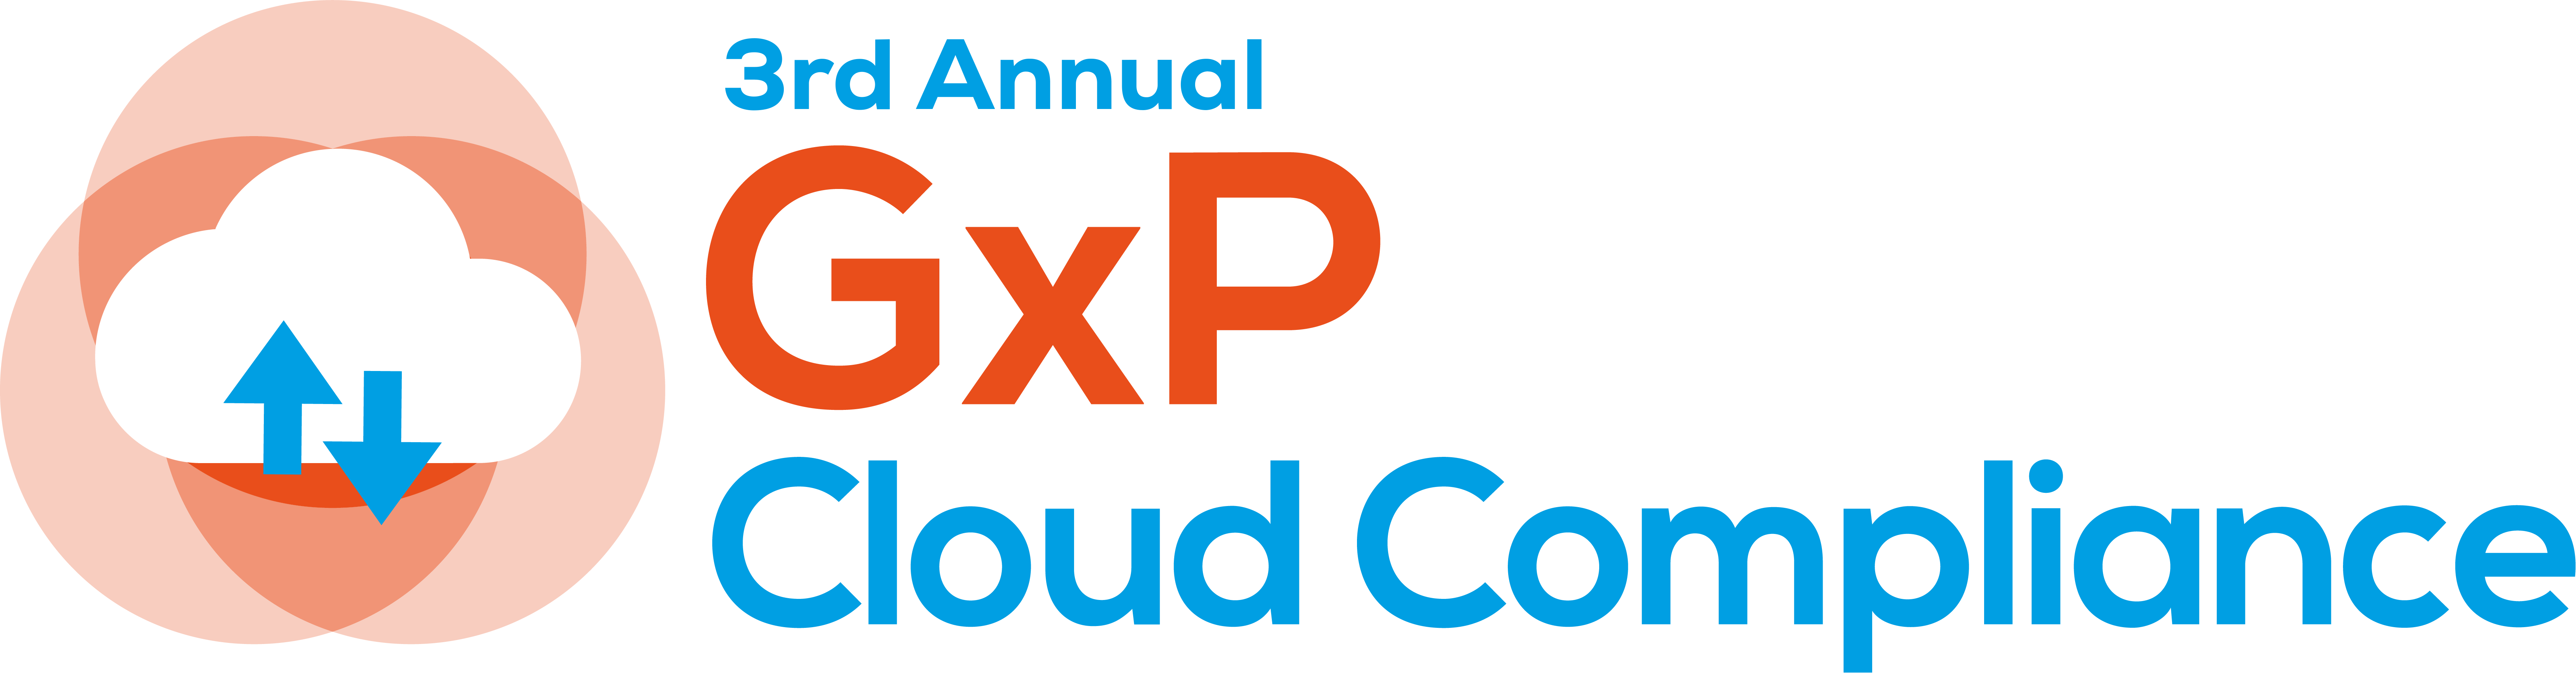 GxP Cloud Compliance 2022 logo